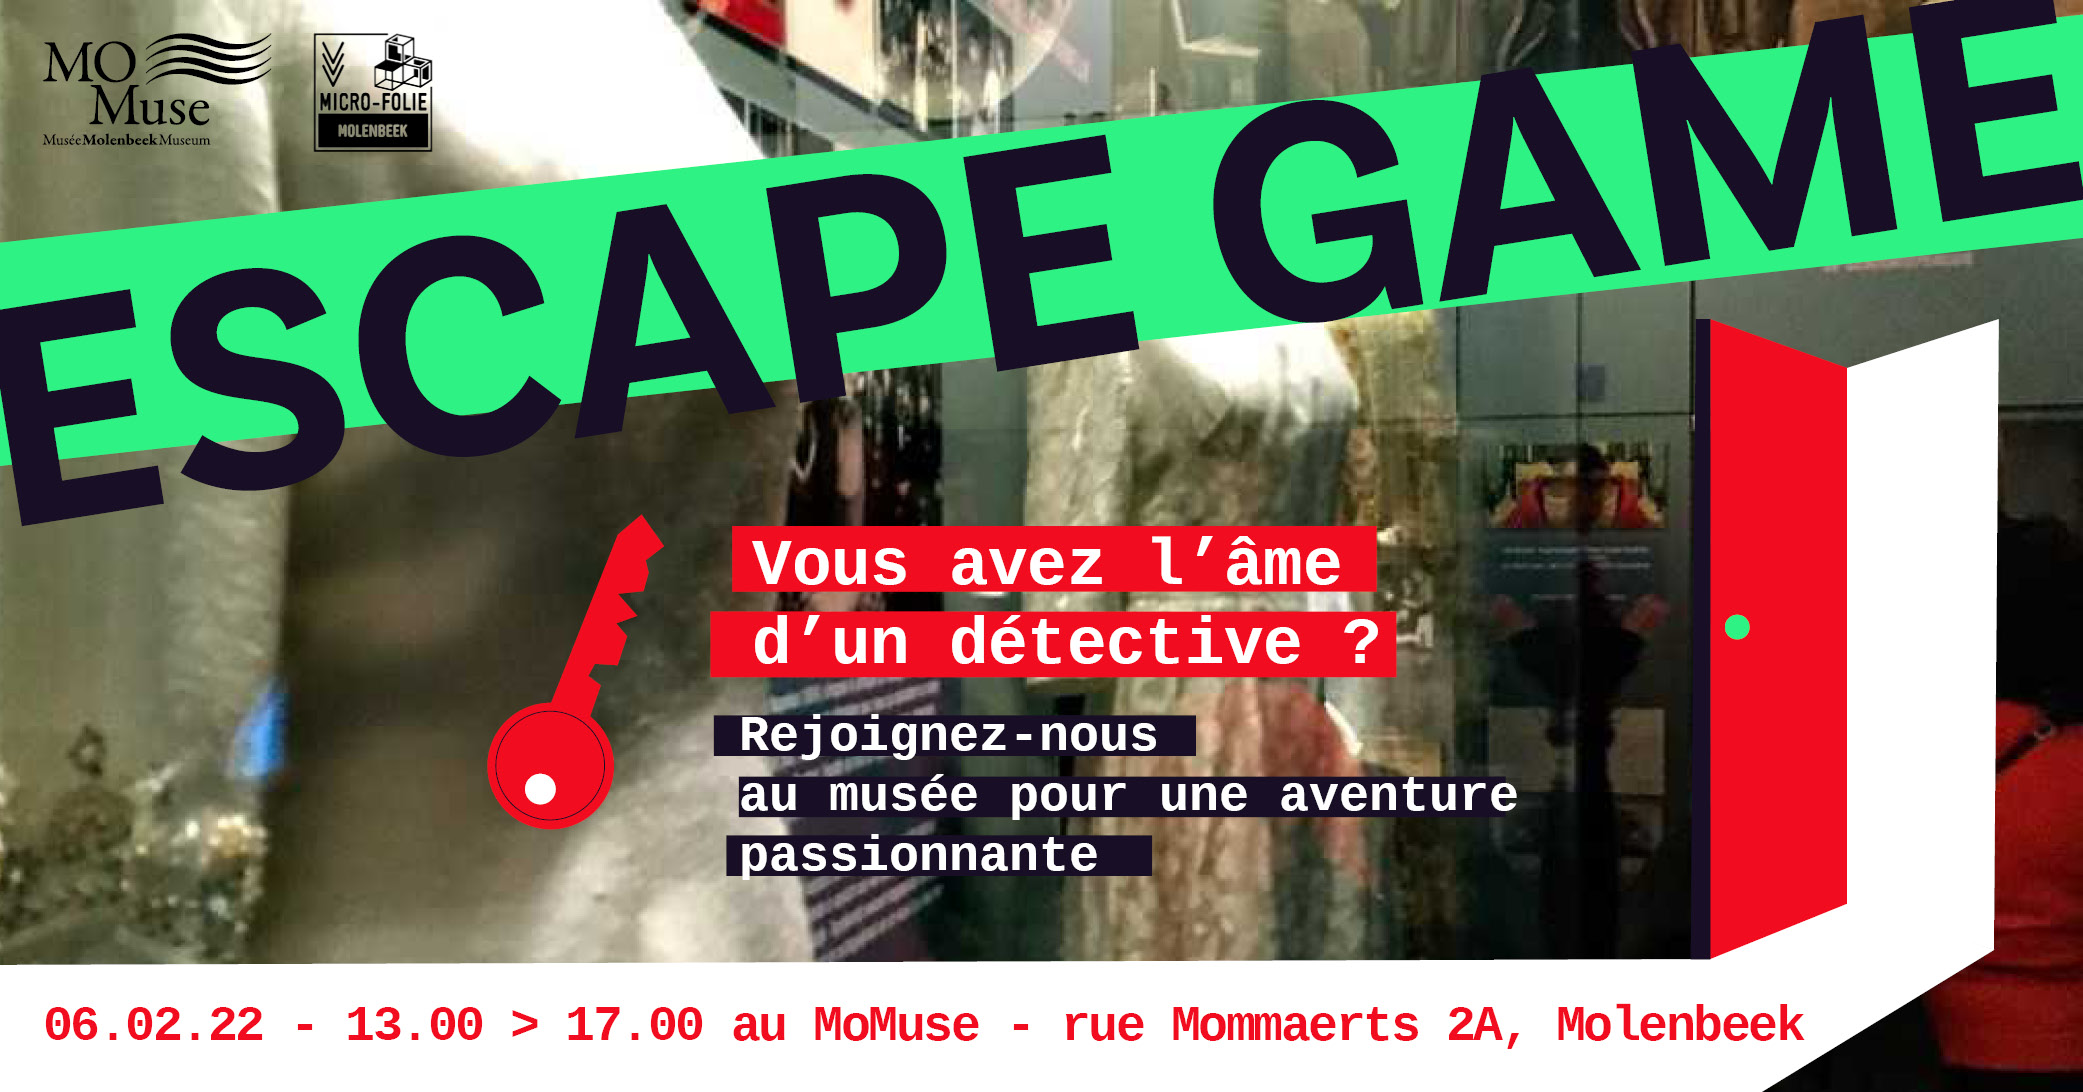 ESCAPE GAME – 06.02.22